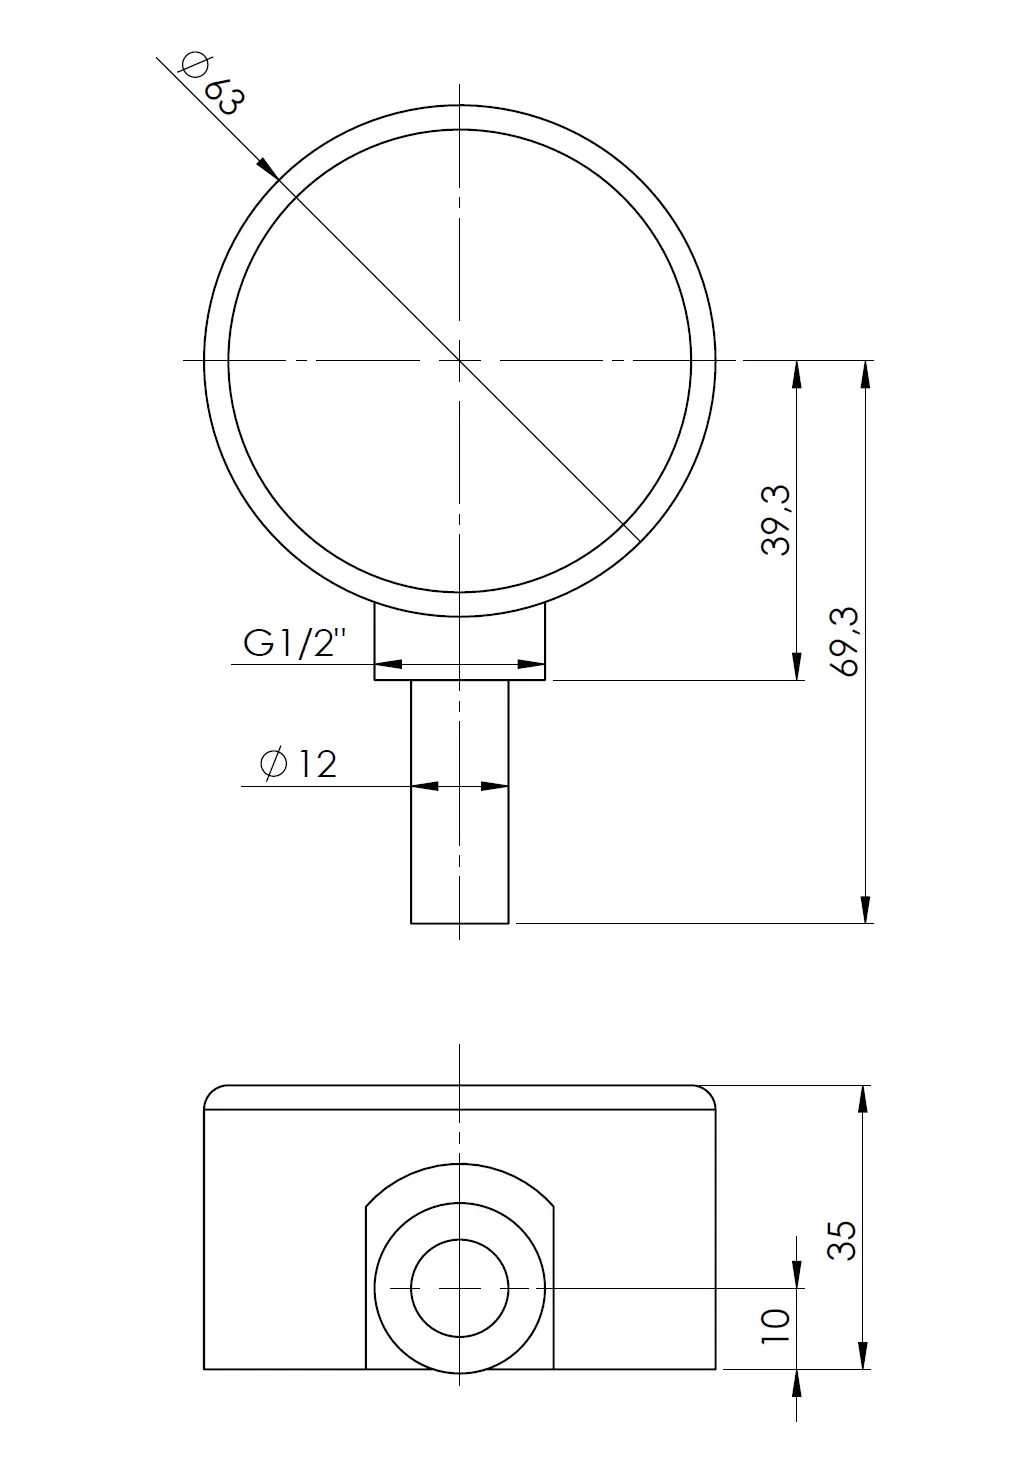 Termometr bimetaliczny BiTh 63, fi63 mm, 0÷60°C, L 40 mm, G1/2", rad, kl. 2 - budowa